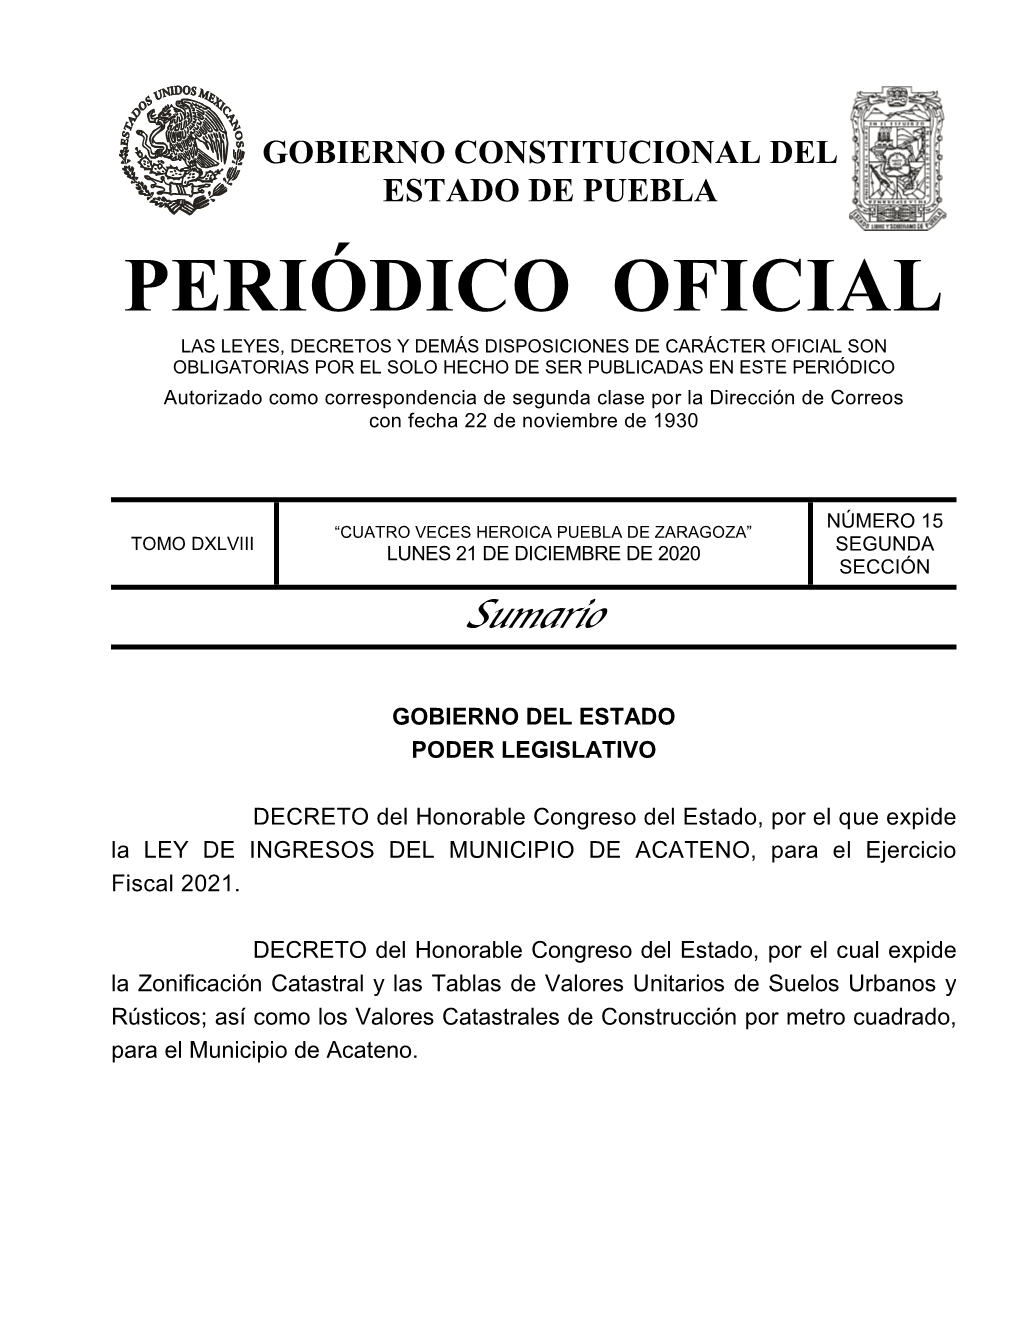 LEY DE INGRESOS DEL MUNICIPIO DE ACATENO, Para El Ejercicio Fiscal 2021